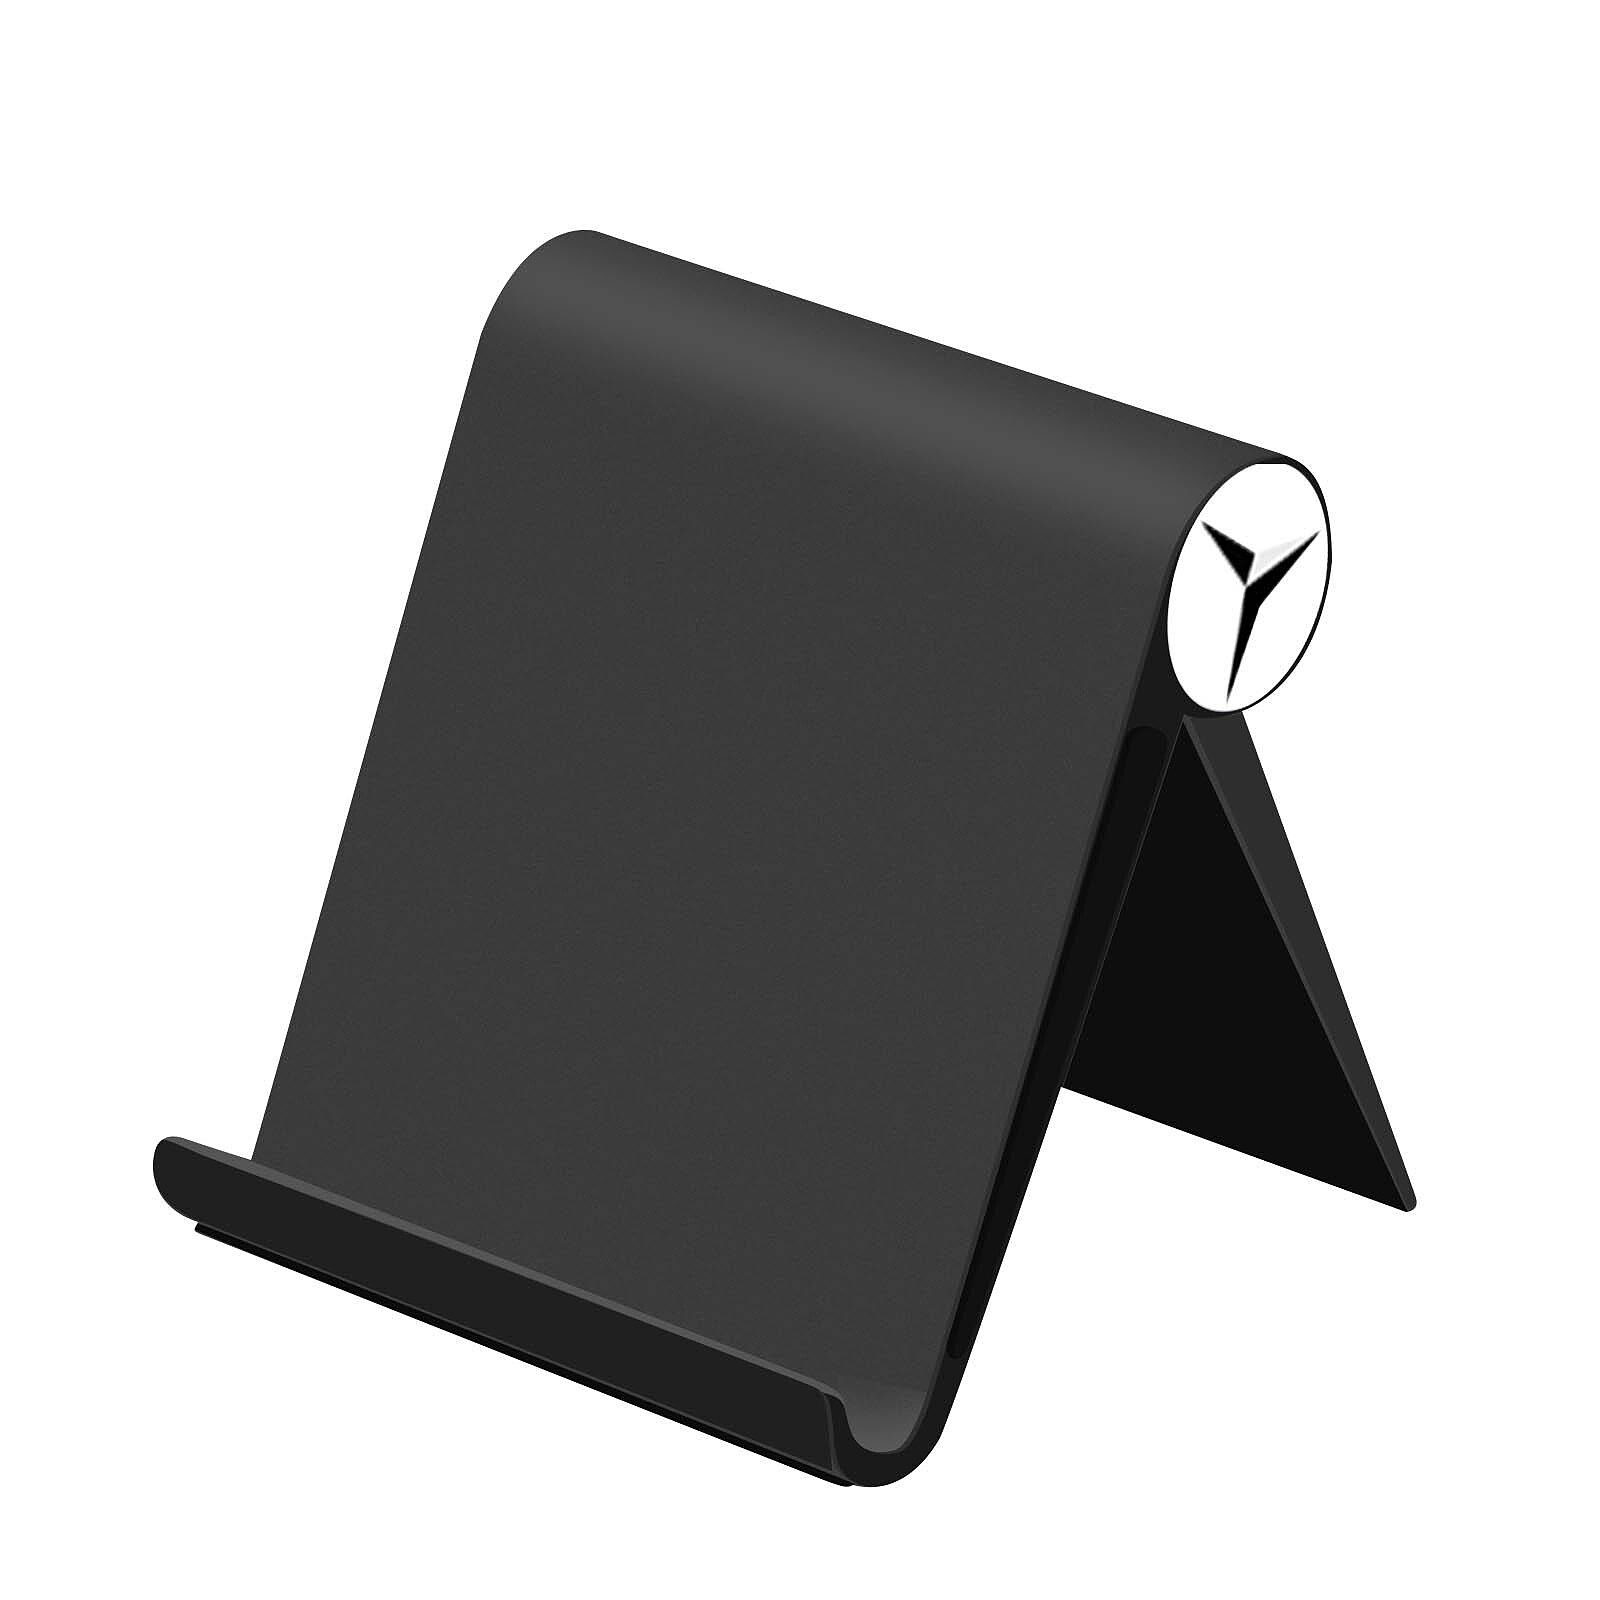 Support de bureau pliable pour tablette, liseuse, Kindle - Couleur noir -  Support tablette modèle MEDIUM